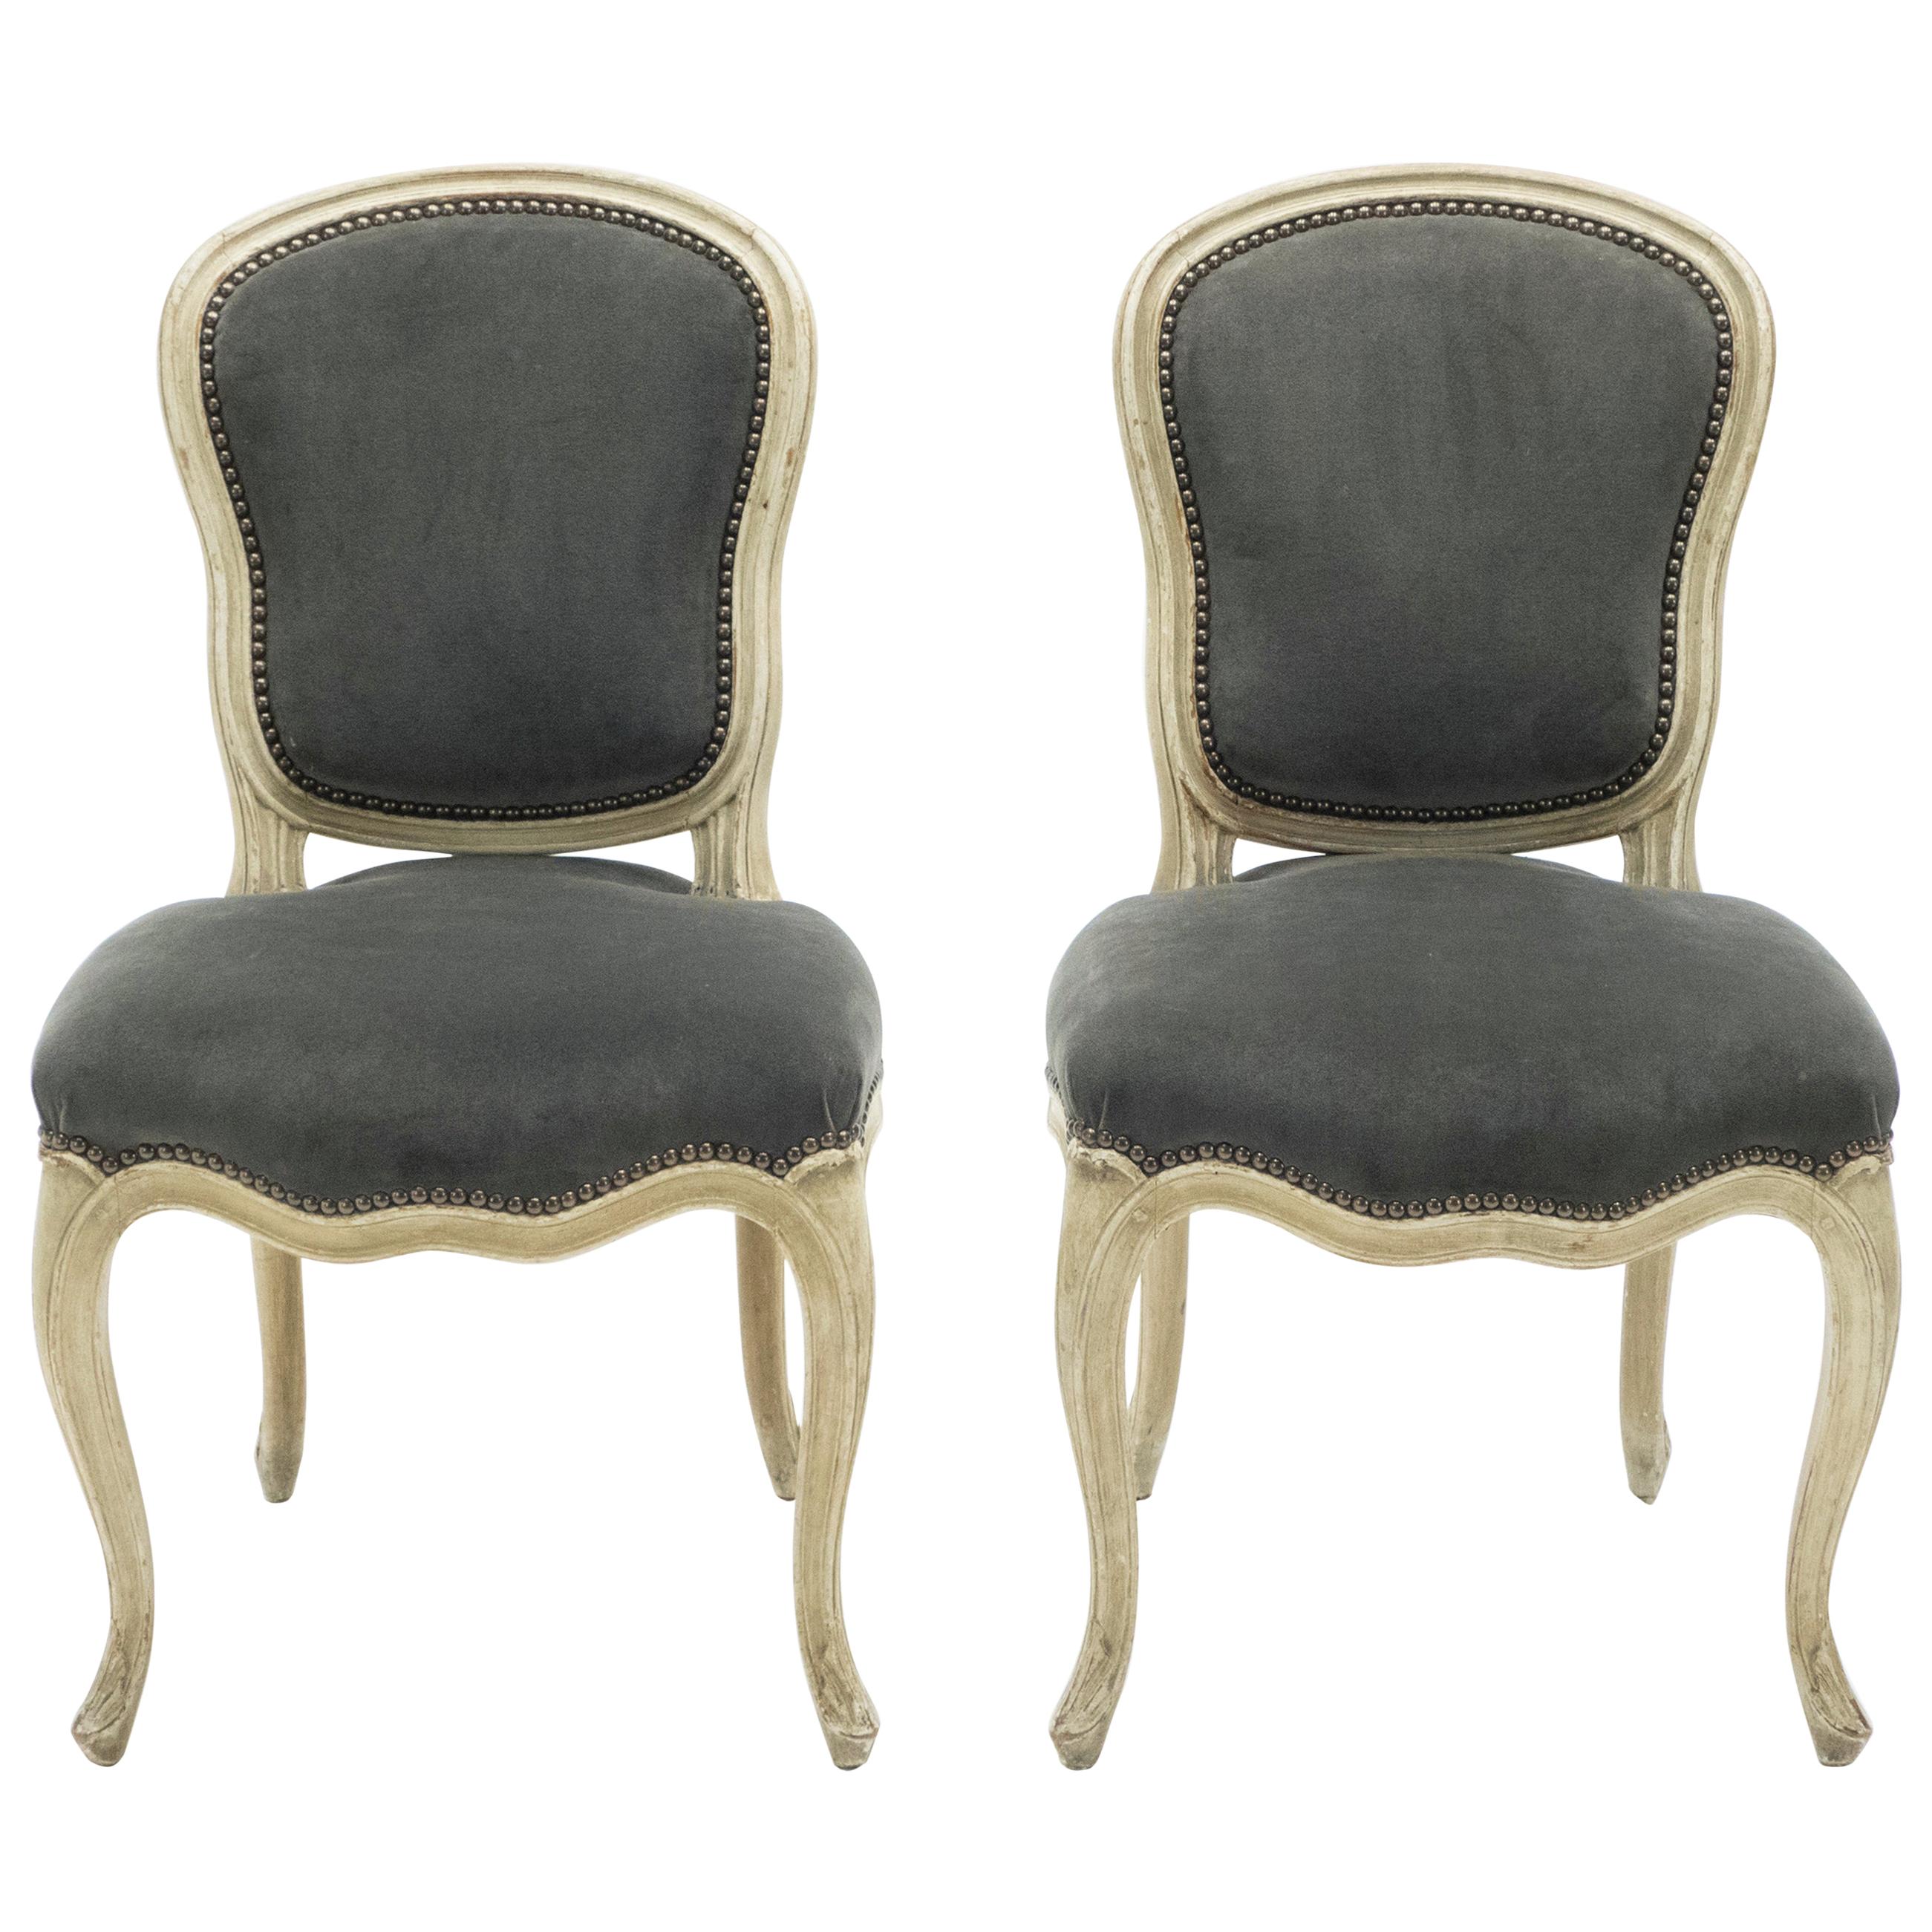 Rare paire de chaises néoclassiques Louis XV estampillées Maison Jansen, années 1940